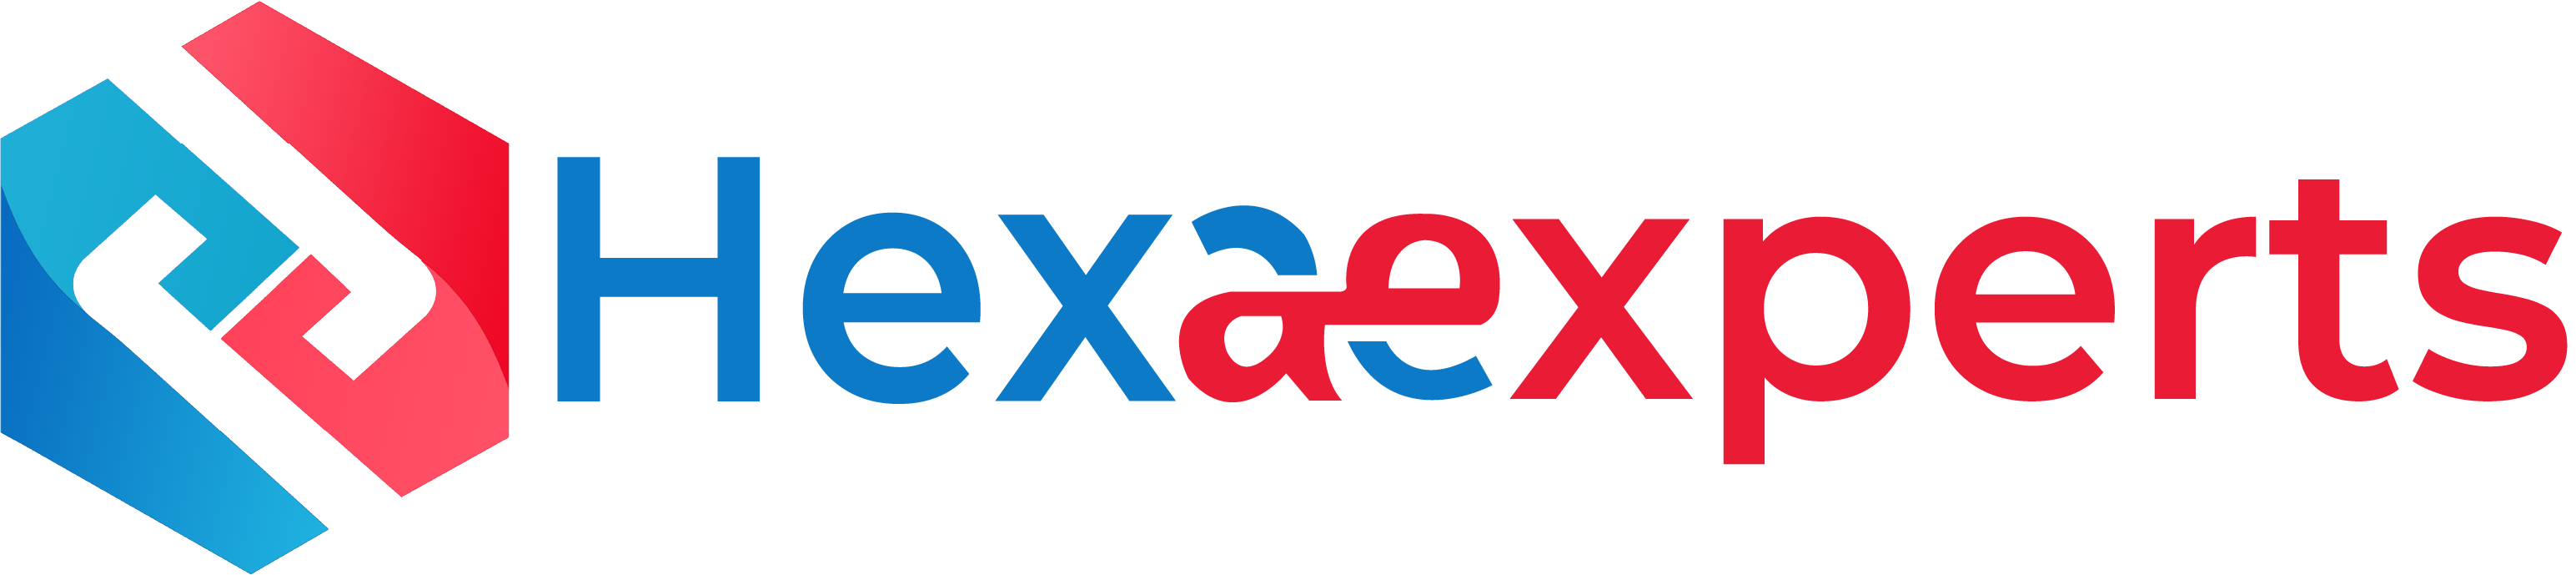 HexaExperts